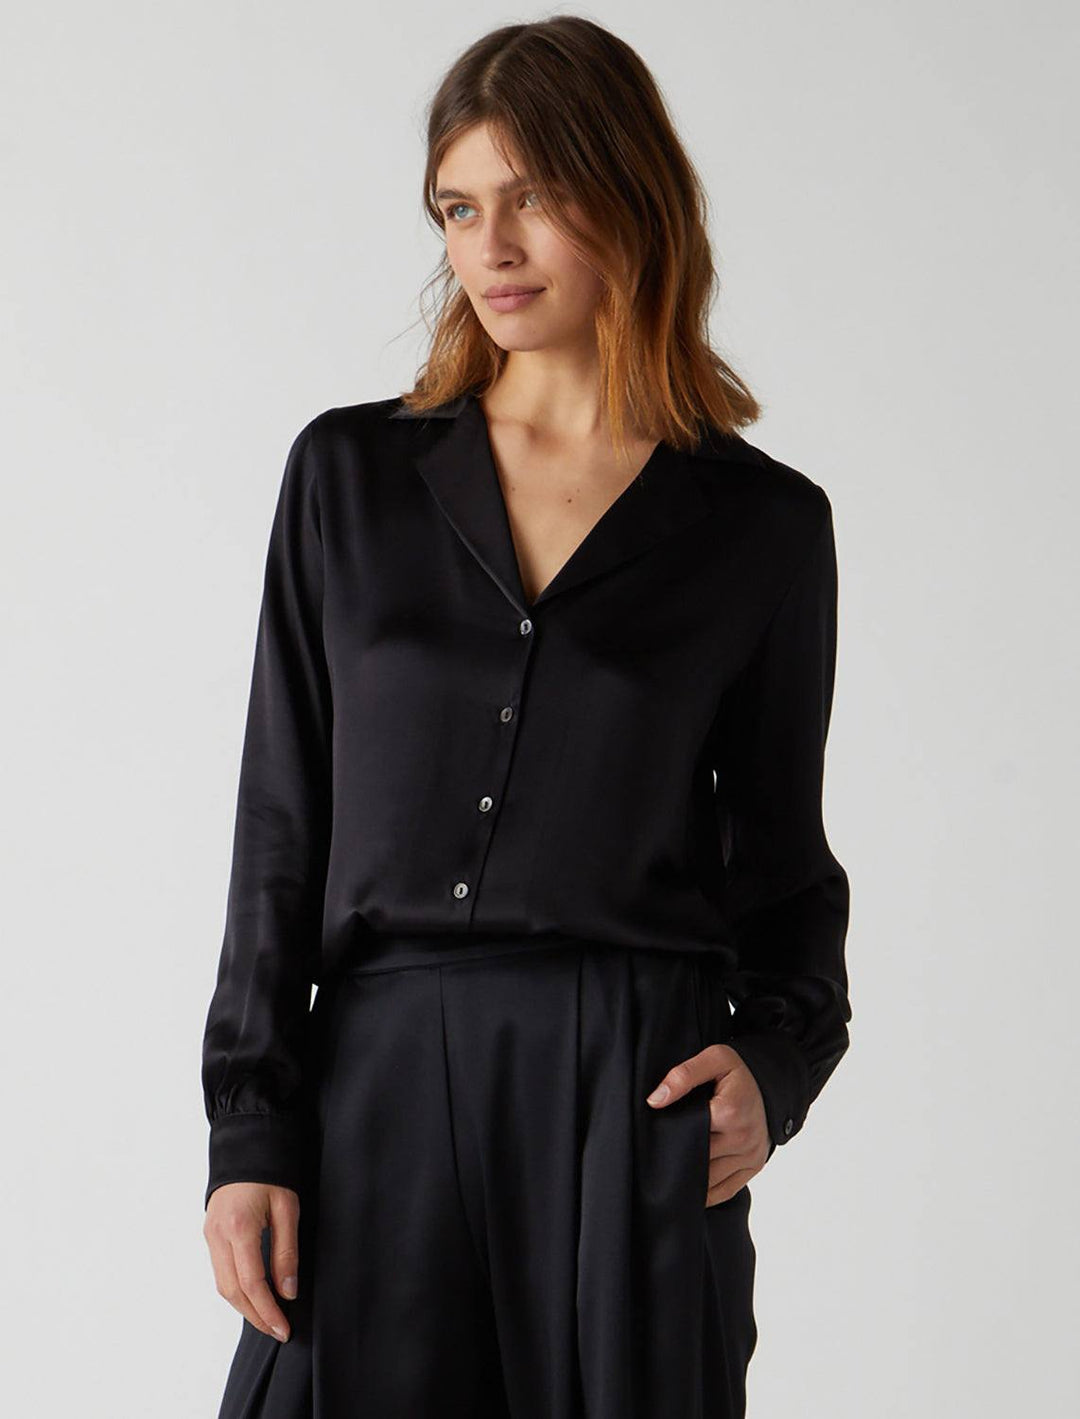 Model wearing Velvet's Soho Blouse in Black. Model pairs the blouse with matching slacks.